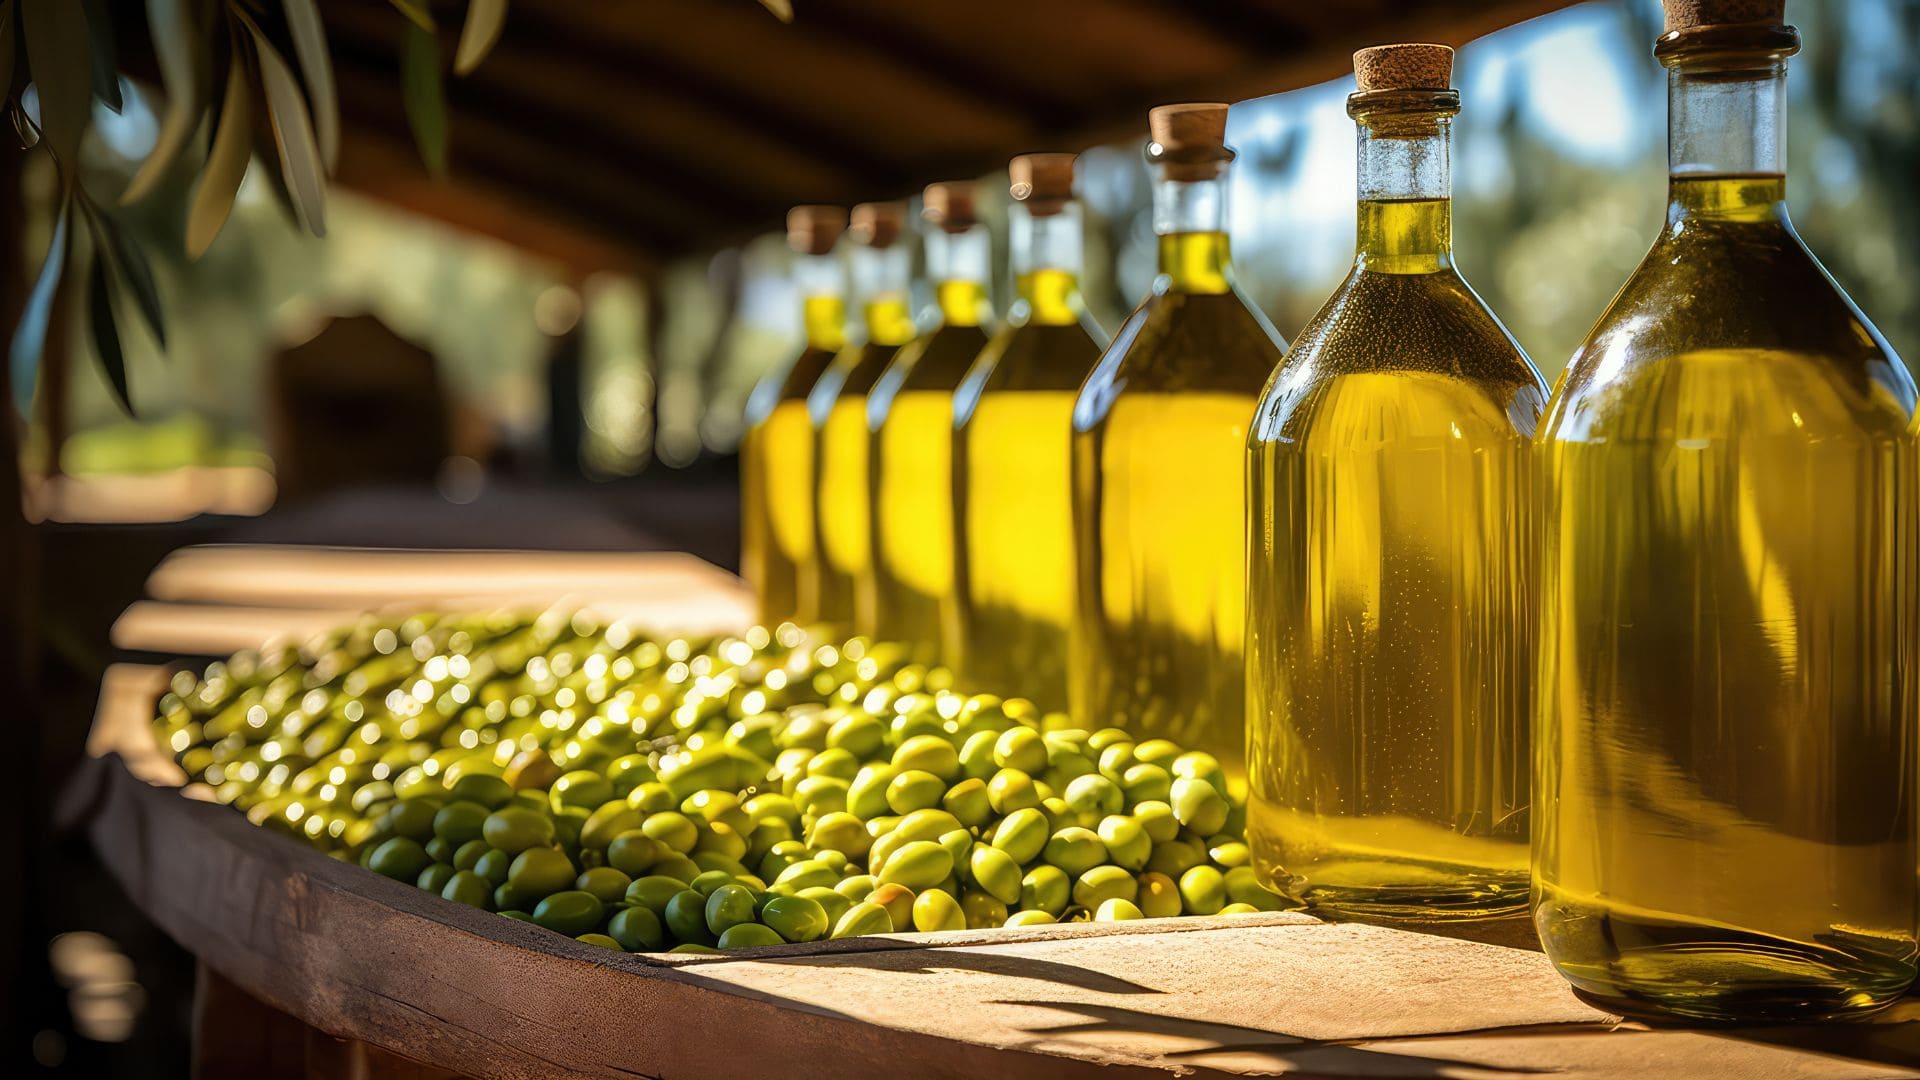 Producción de aceite de oliva en Andalucía